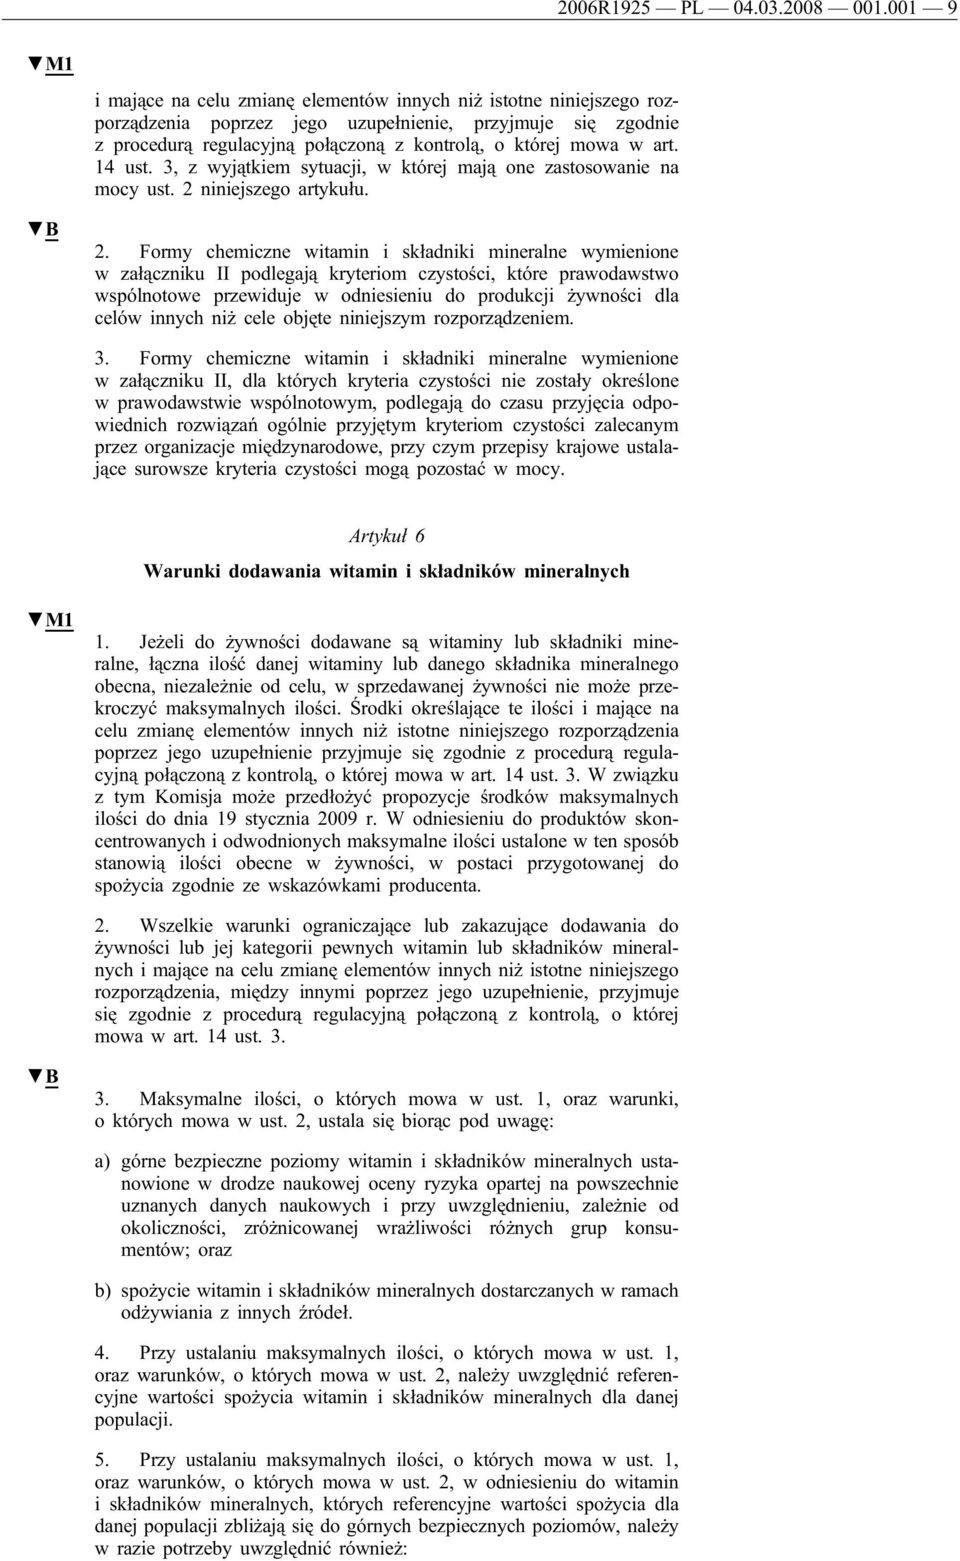 art. 14 ust. 3, z wyjątkiem sytuacji, w której mają one zastosowanie na mocy ust. 2 